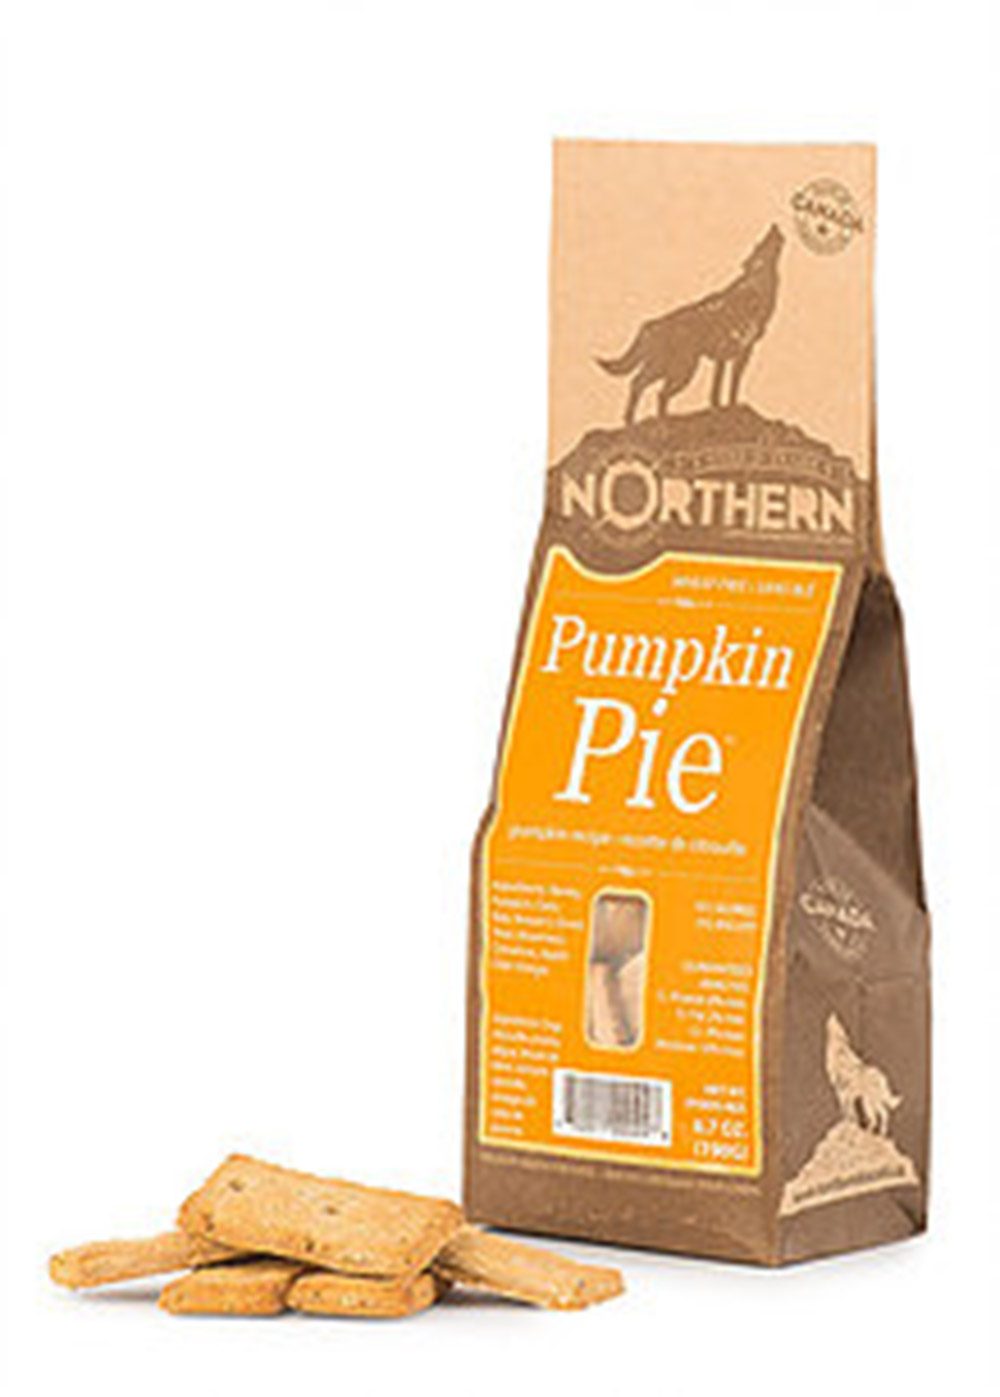 Northern-南瓜派
Northern-Pumpkin Pie